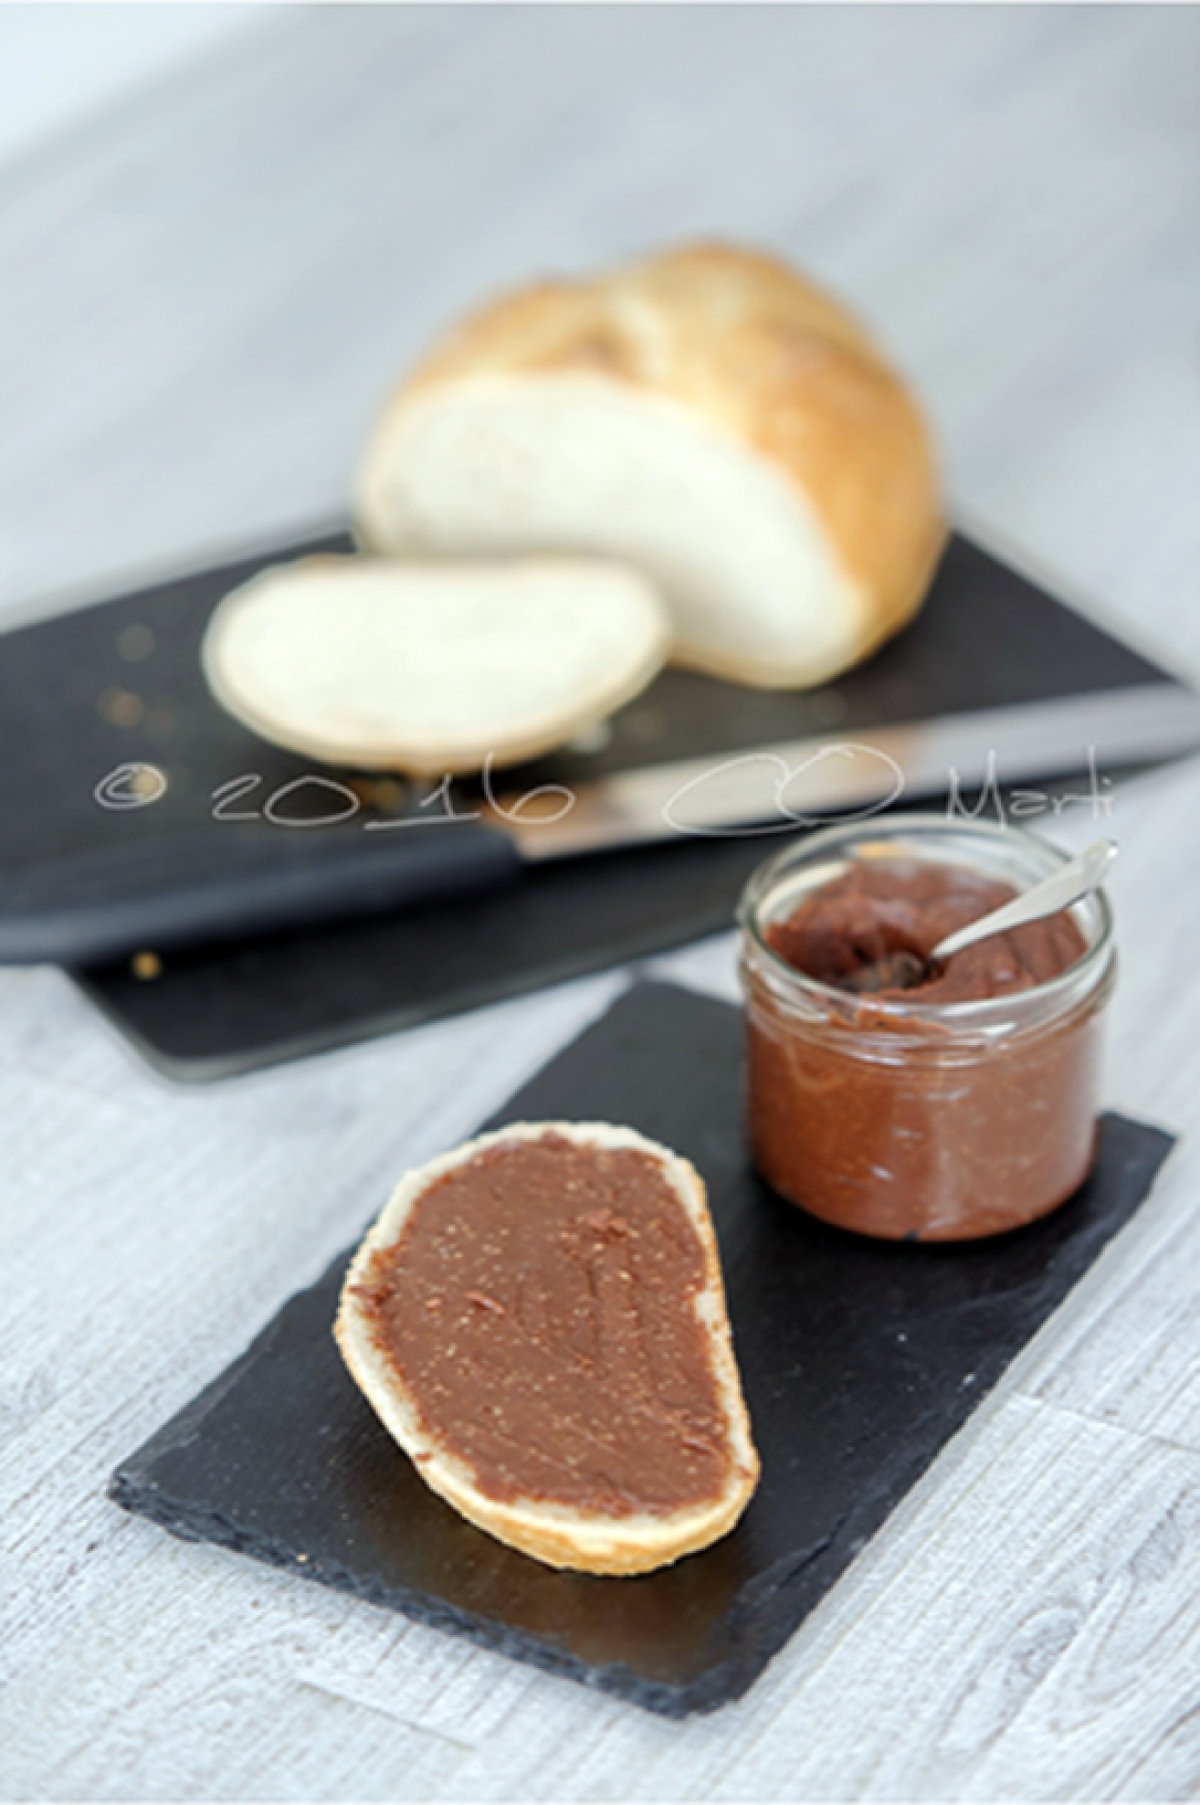 Découvrez notre recette : pâte à tartiner au chocolat Suisse